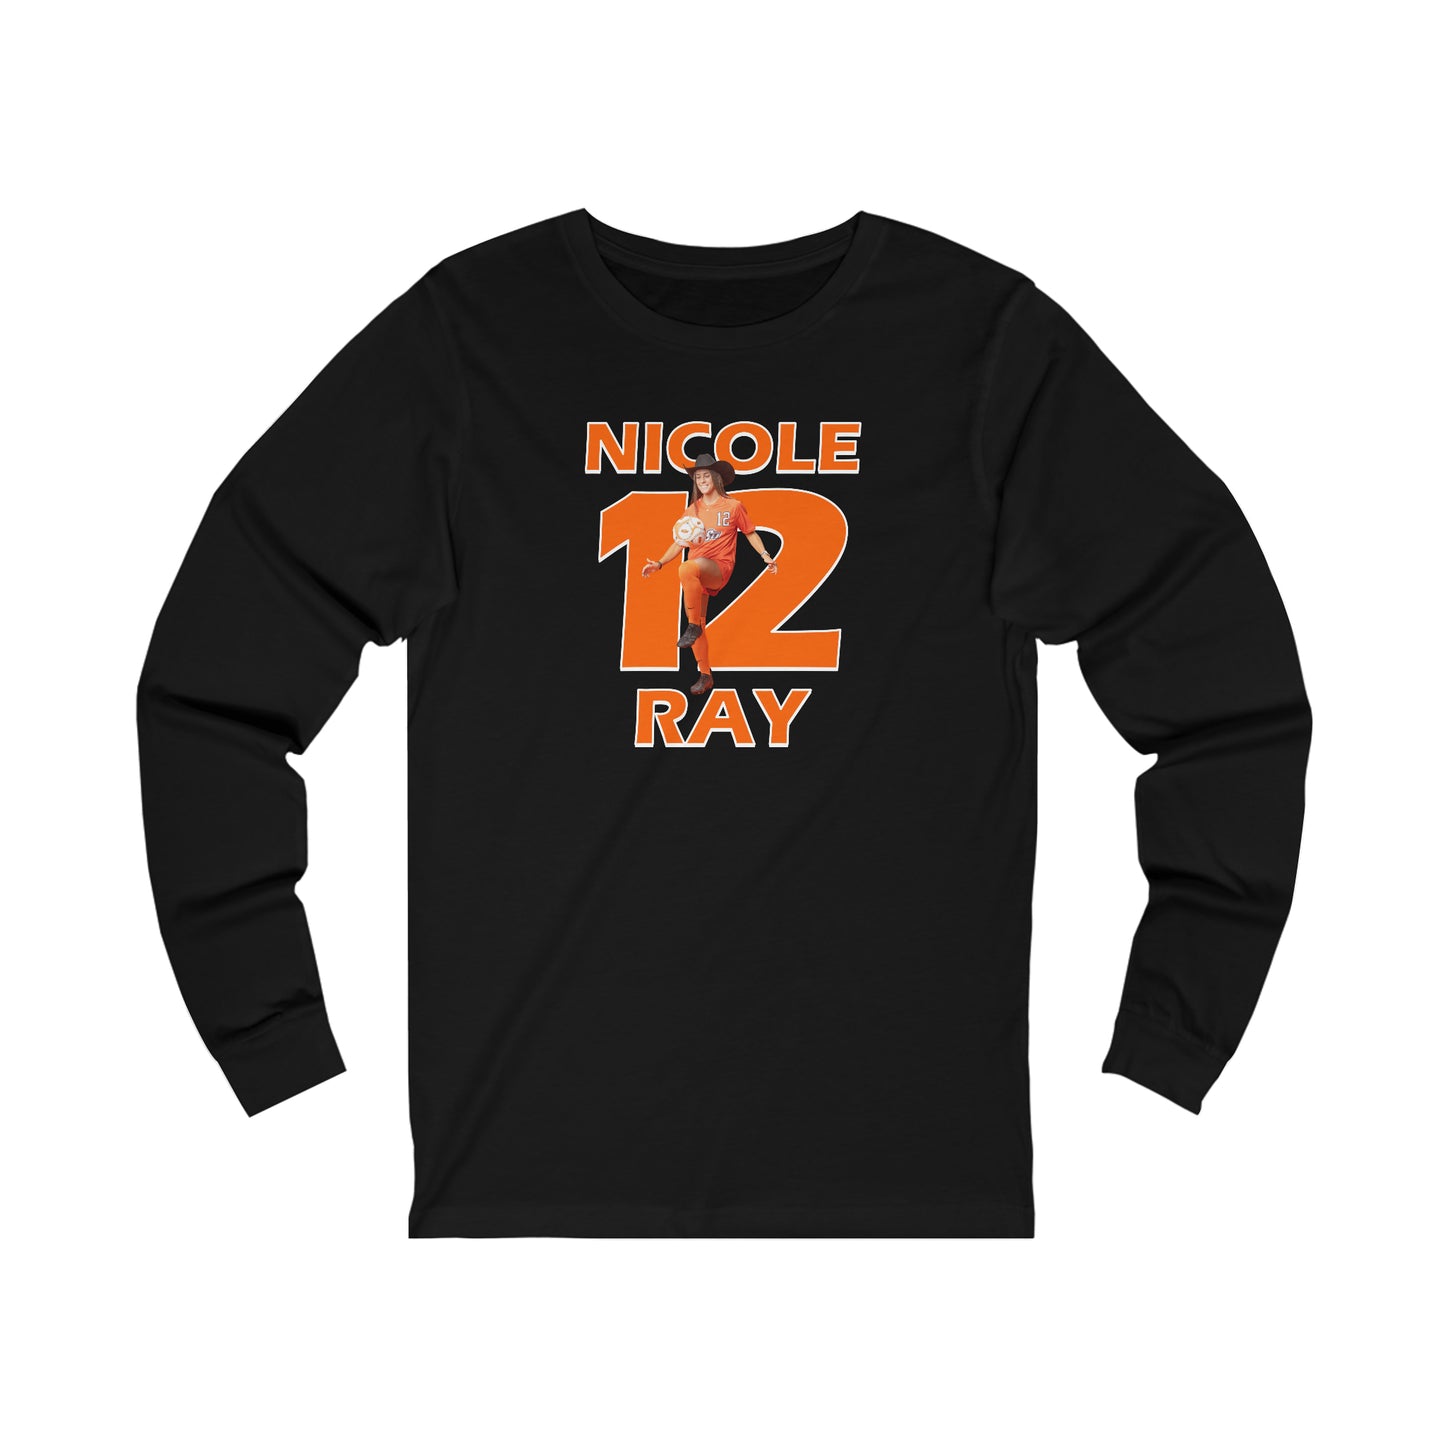 Nicole Ray Long Sleeve T-Shirt